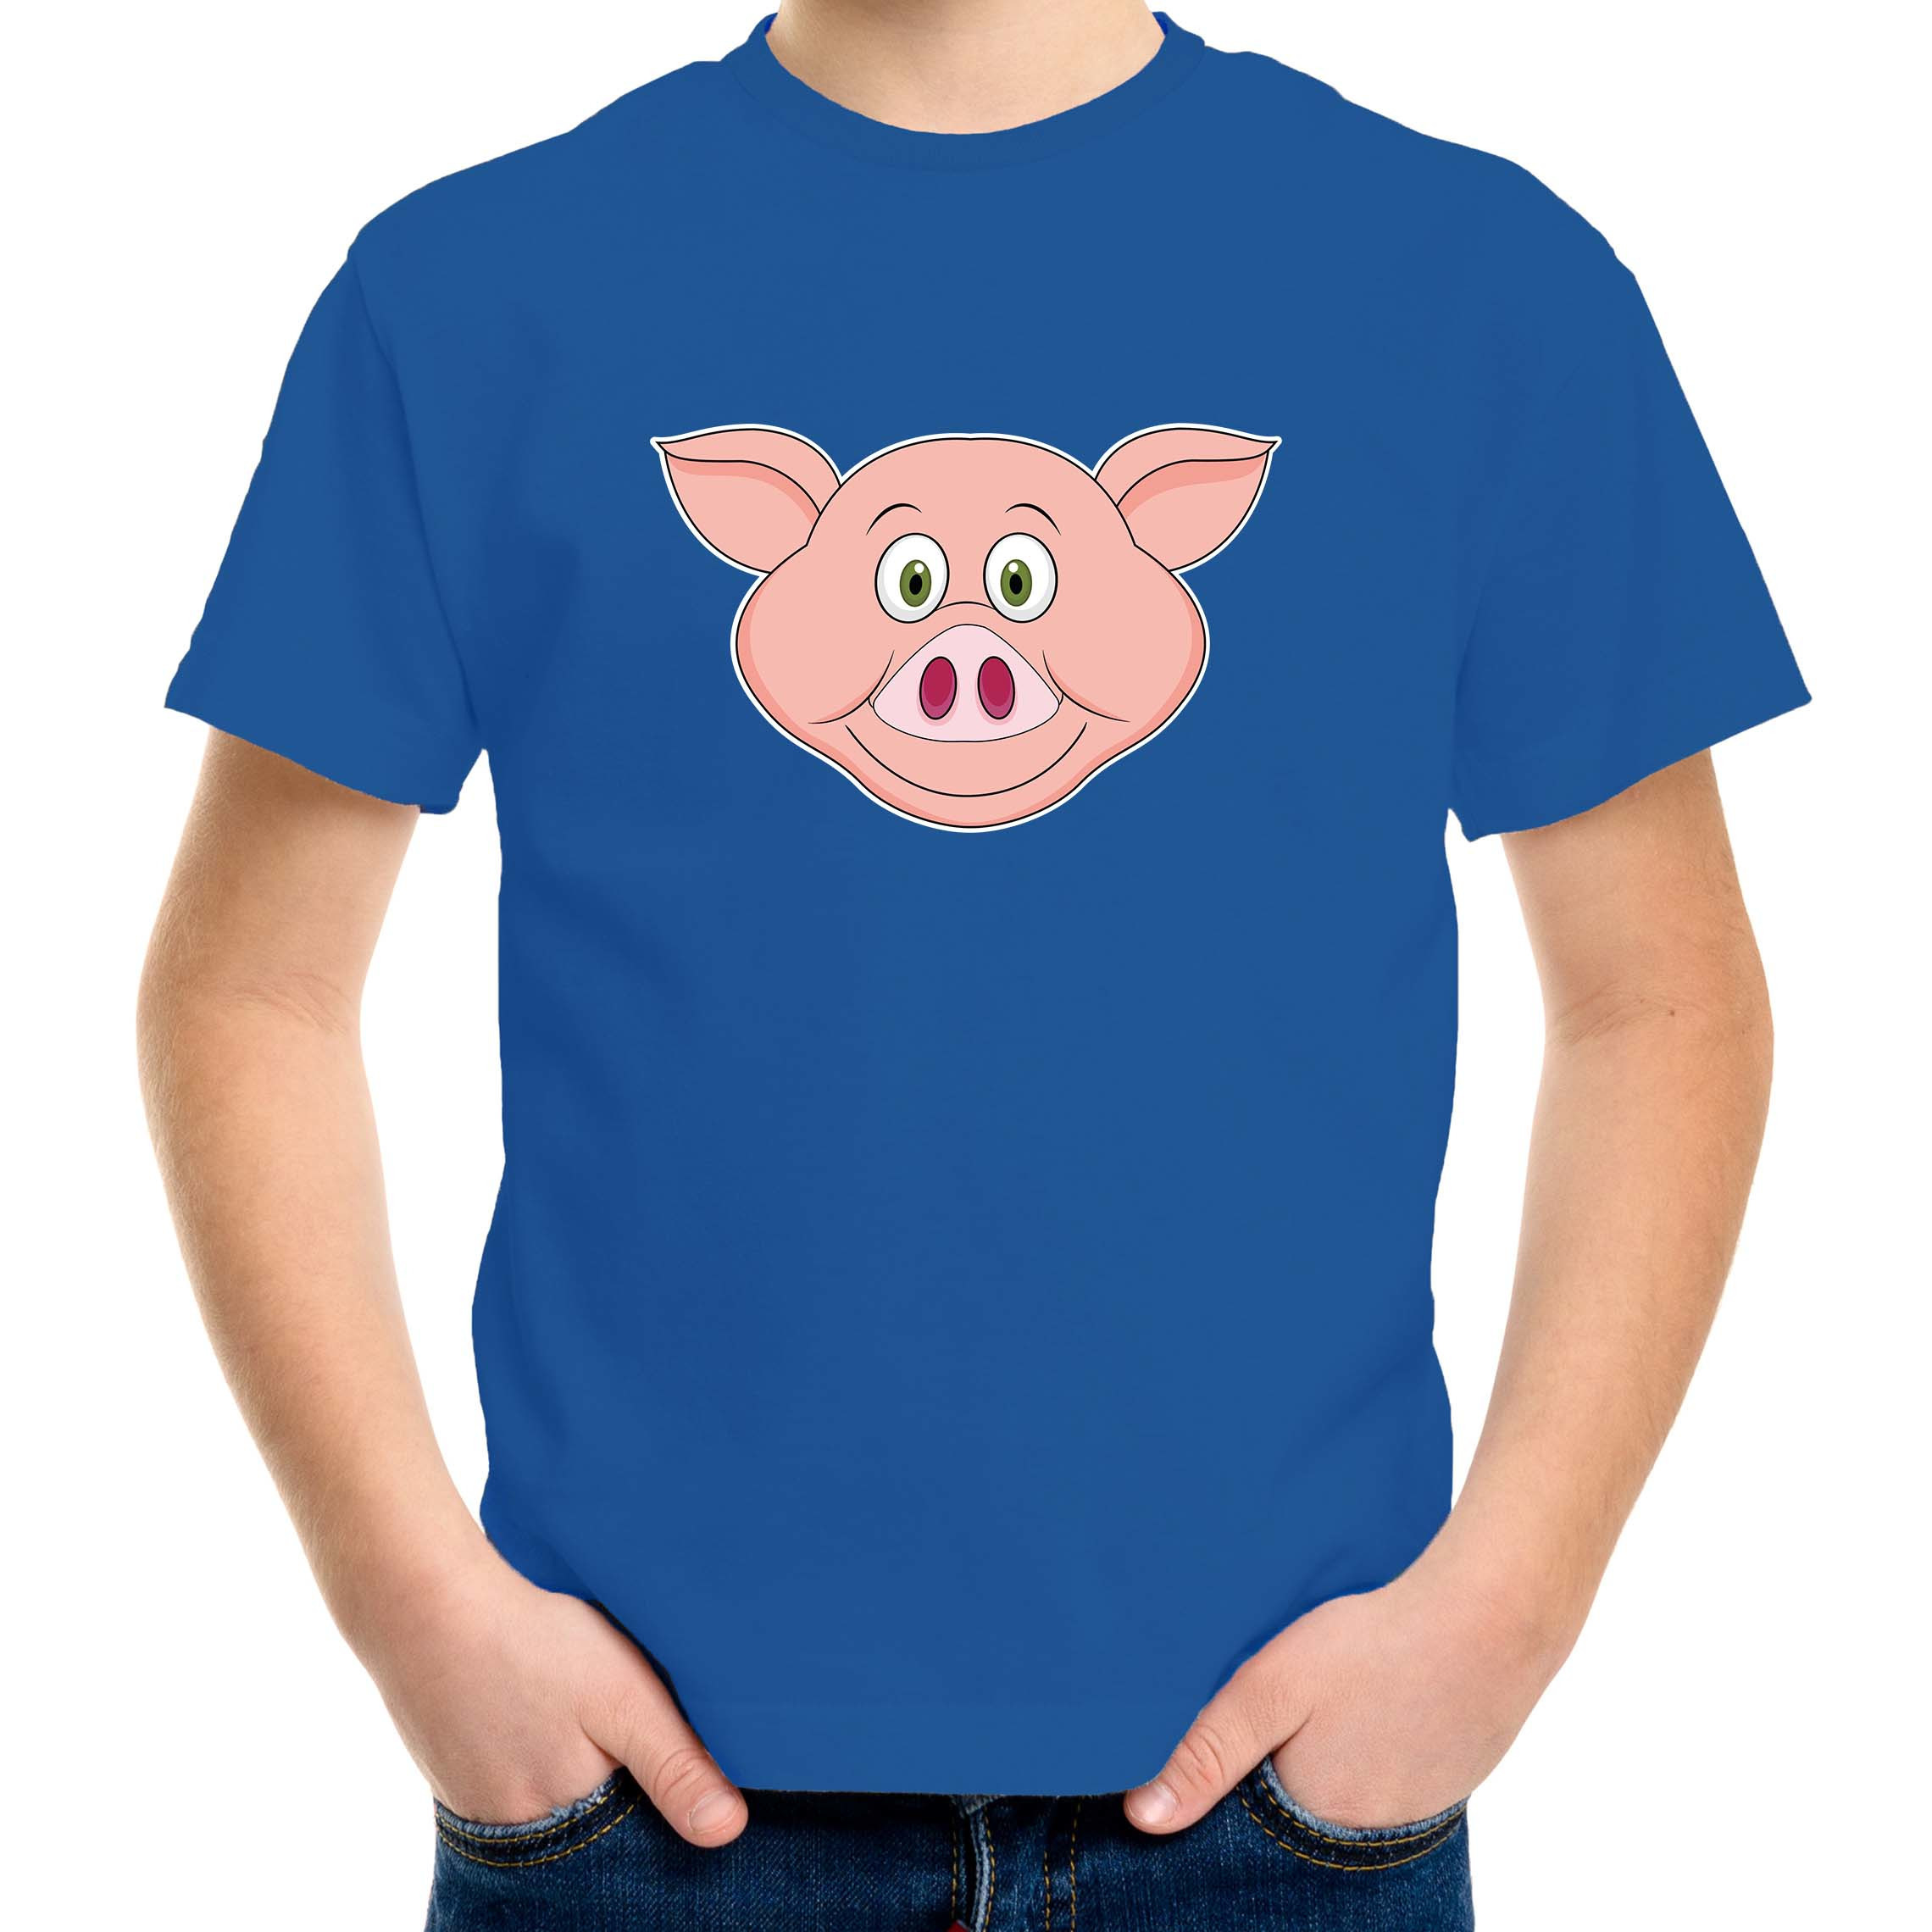 Cartoon varken t-shirt blauw voor jongens en meisjes - Cartoon dieren t-shirts kinderen